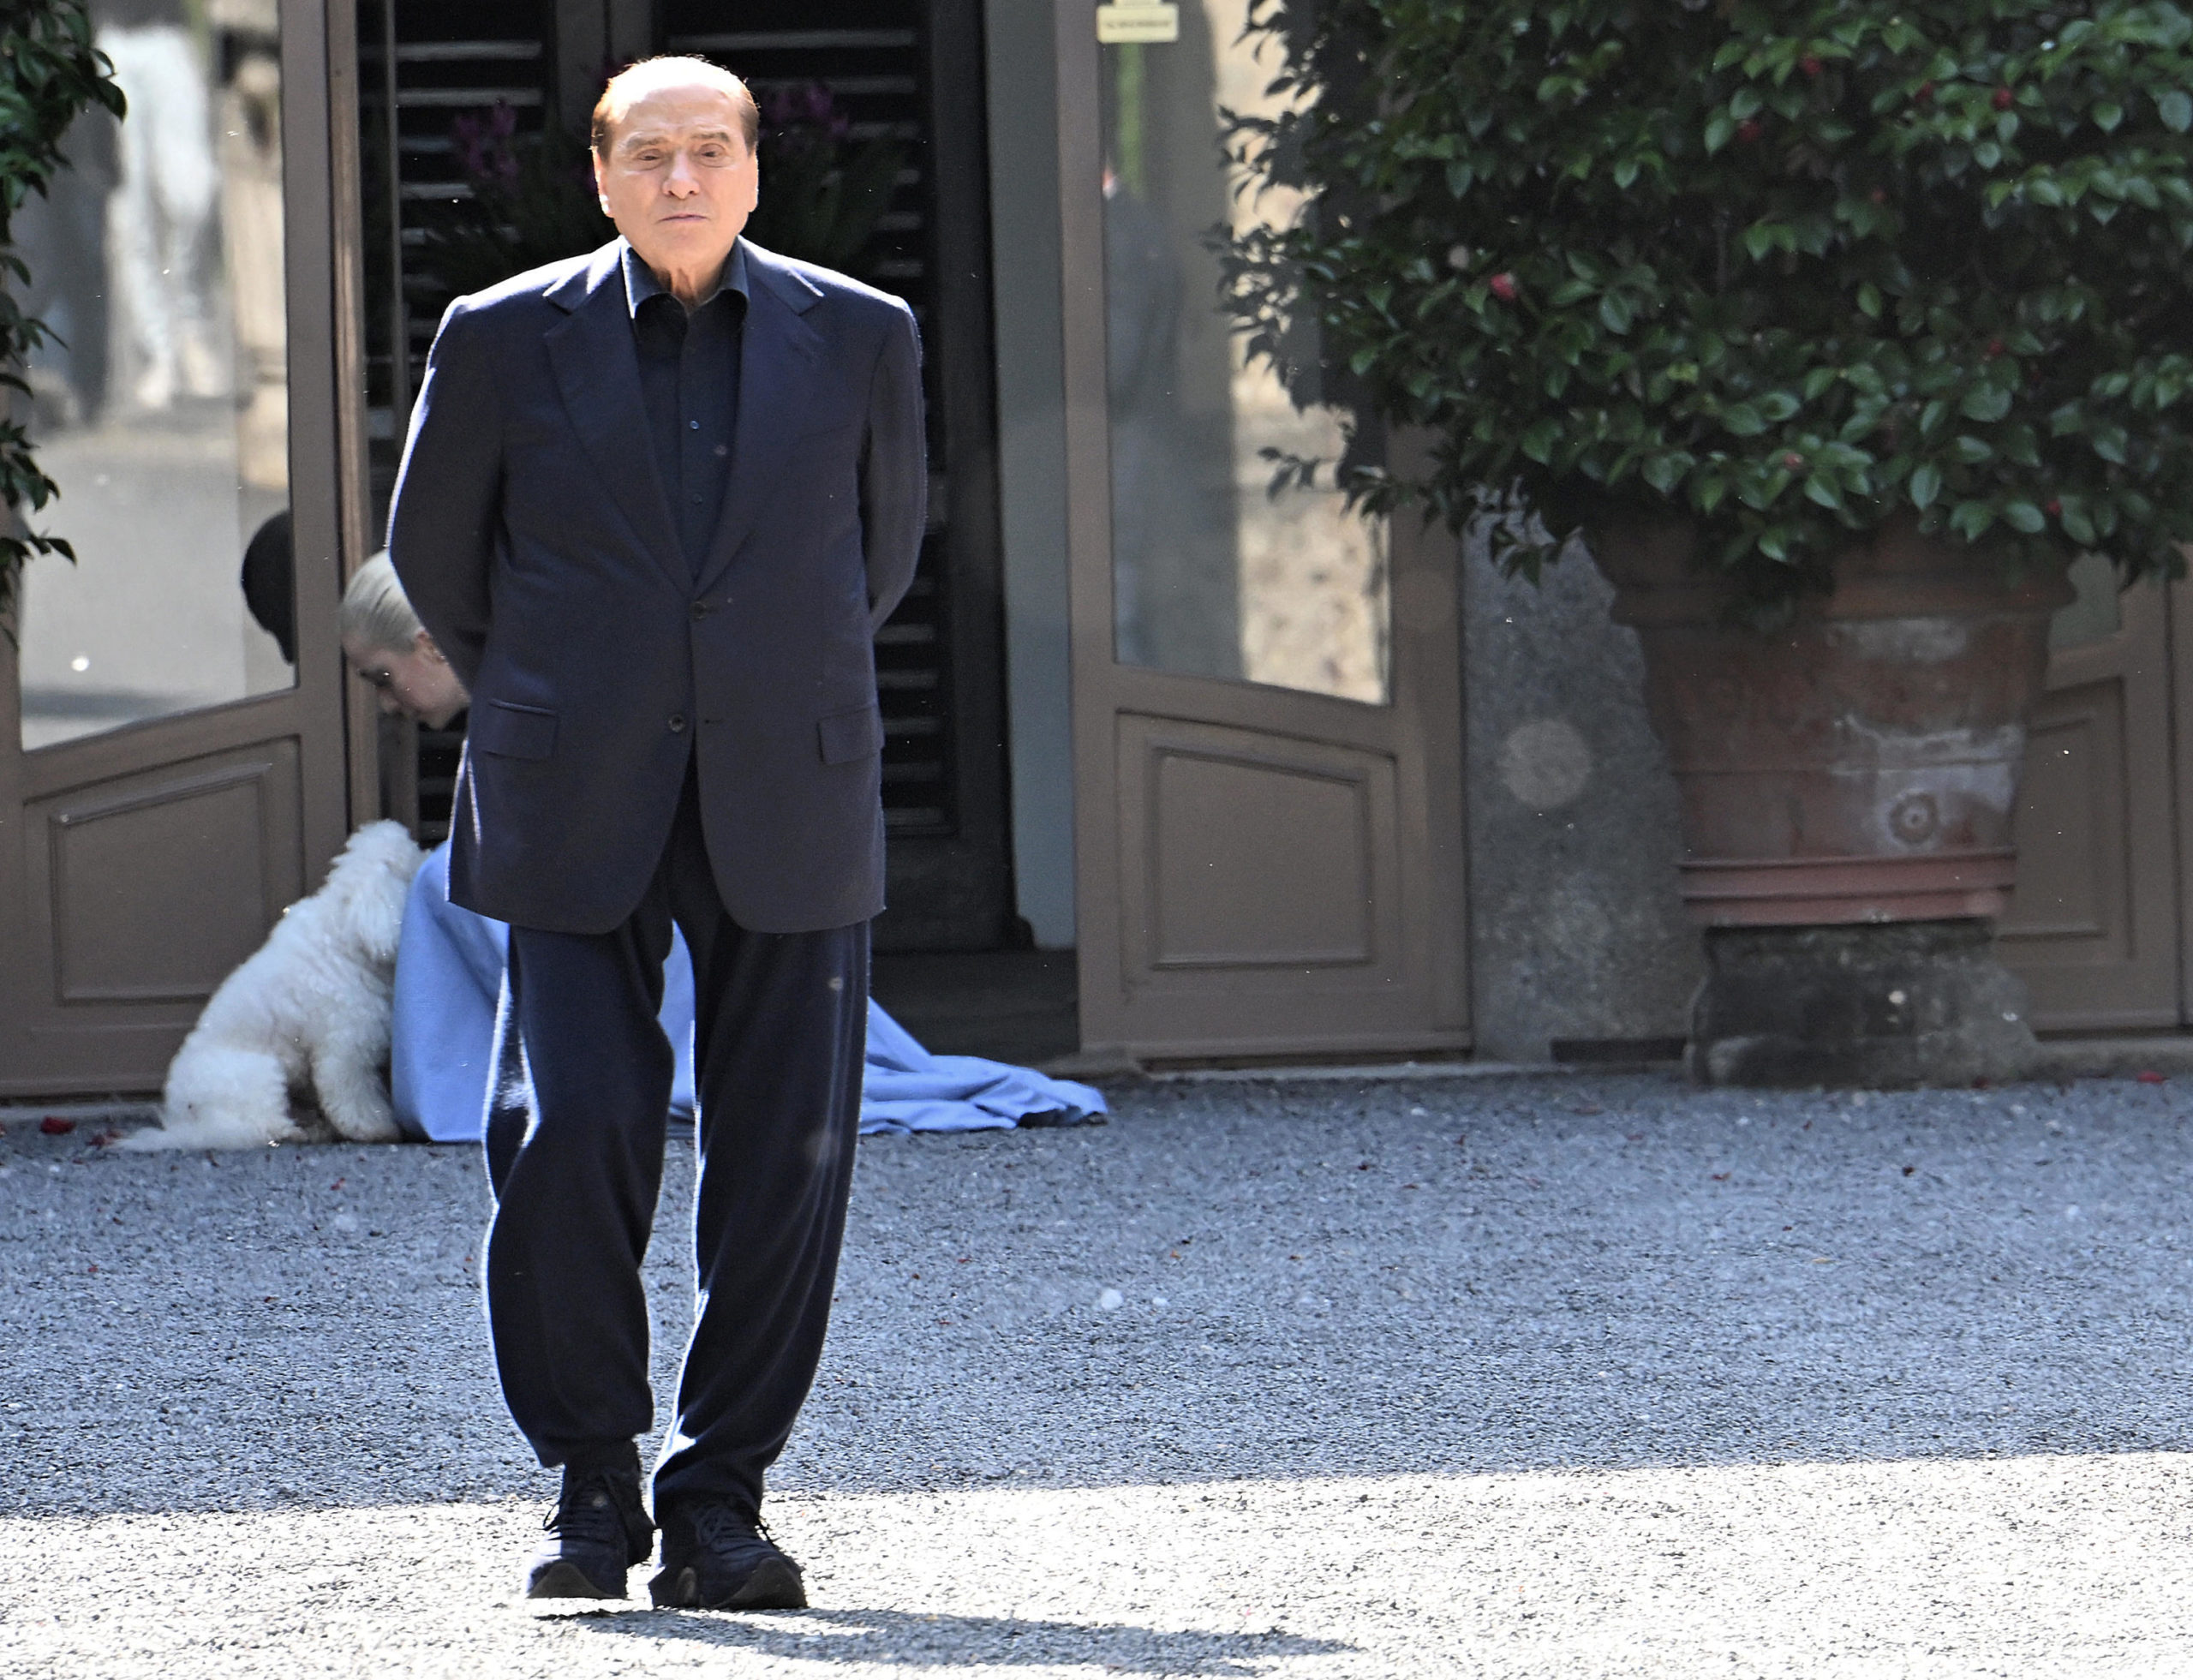 Altra notte tranquilla per Berlusconi, nessun bollettino fino a lunedì